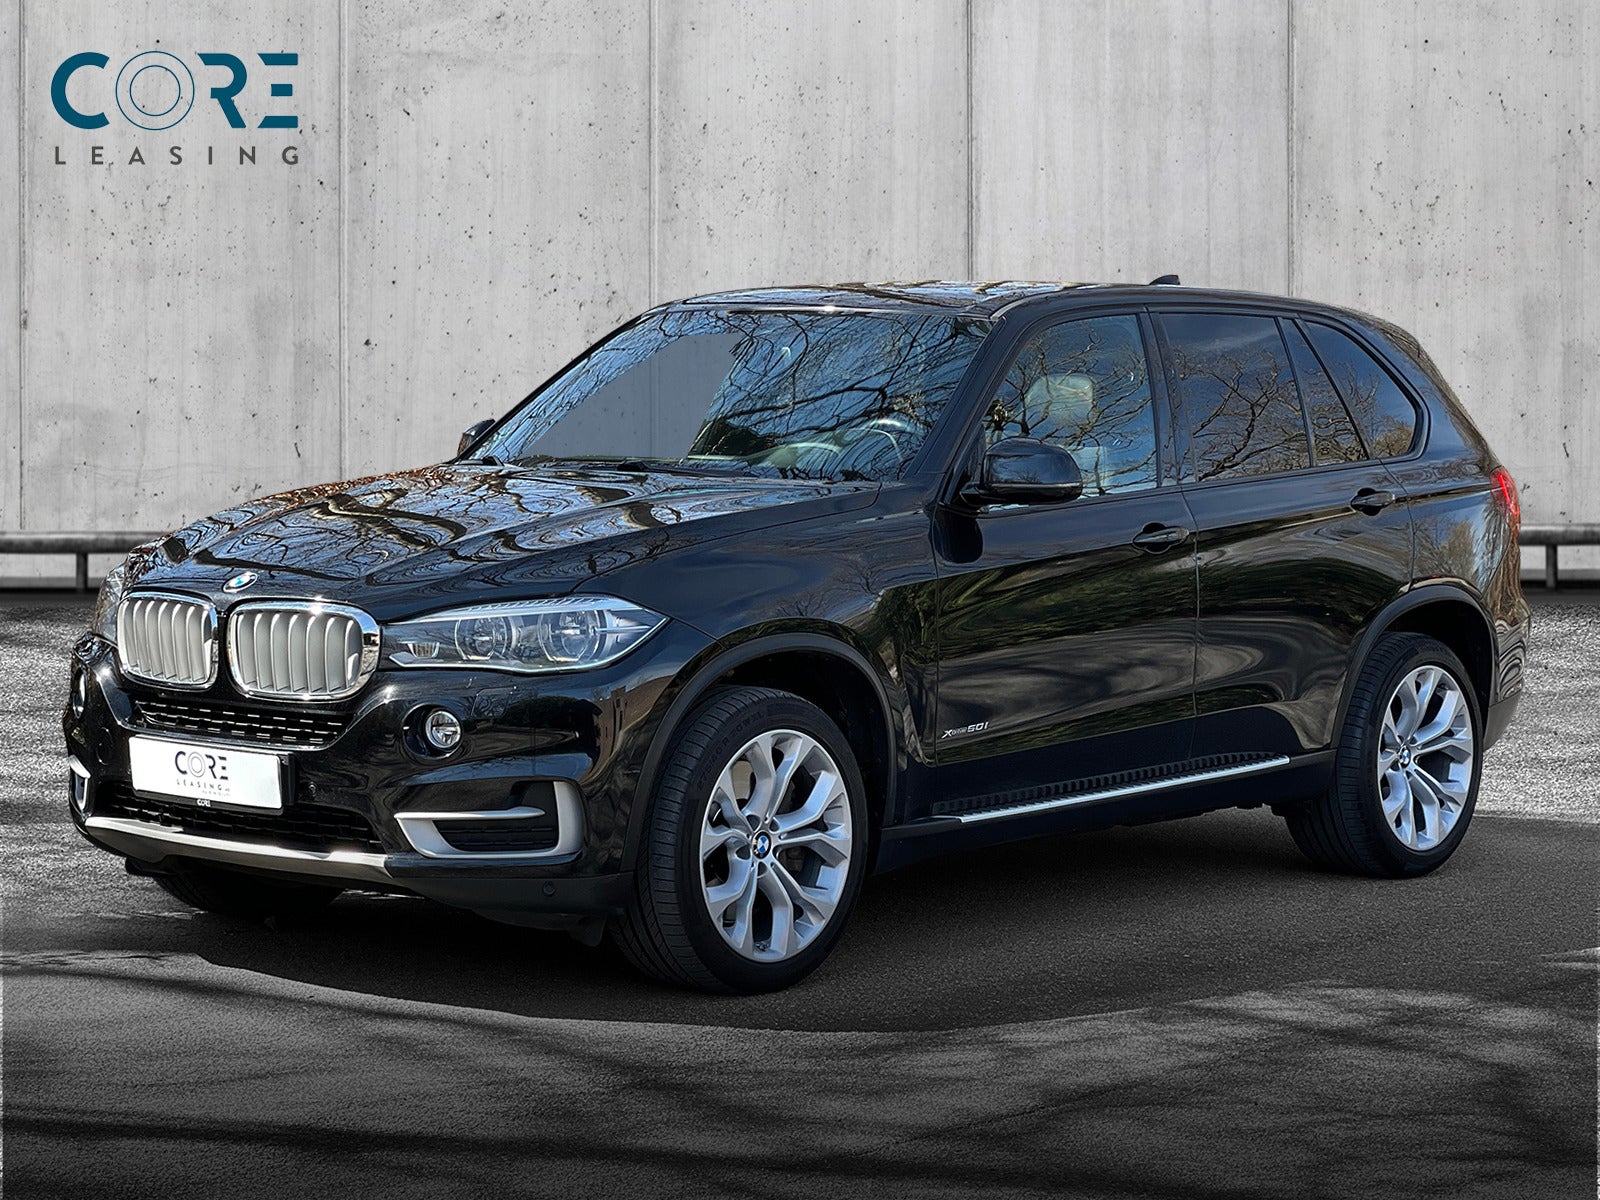 Sortmetal BMW X5 xDrive50i aut. fra 2015 parkeret foran en betonmur. CORE Leasing A/S er eksperter i BMW leasing.